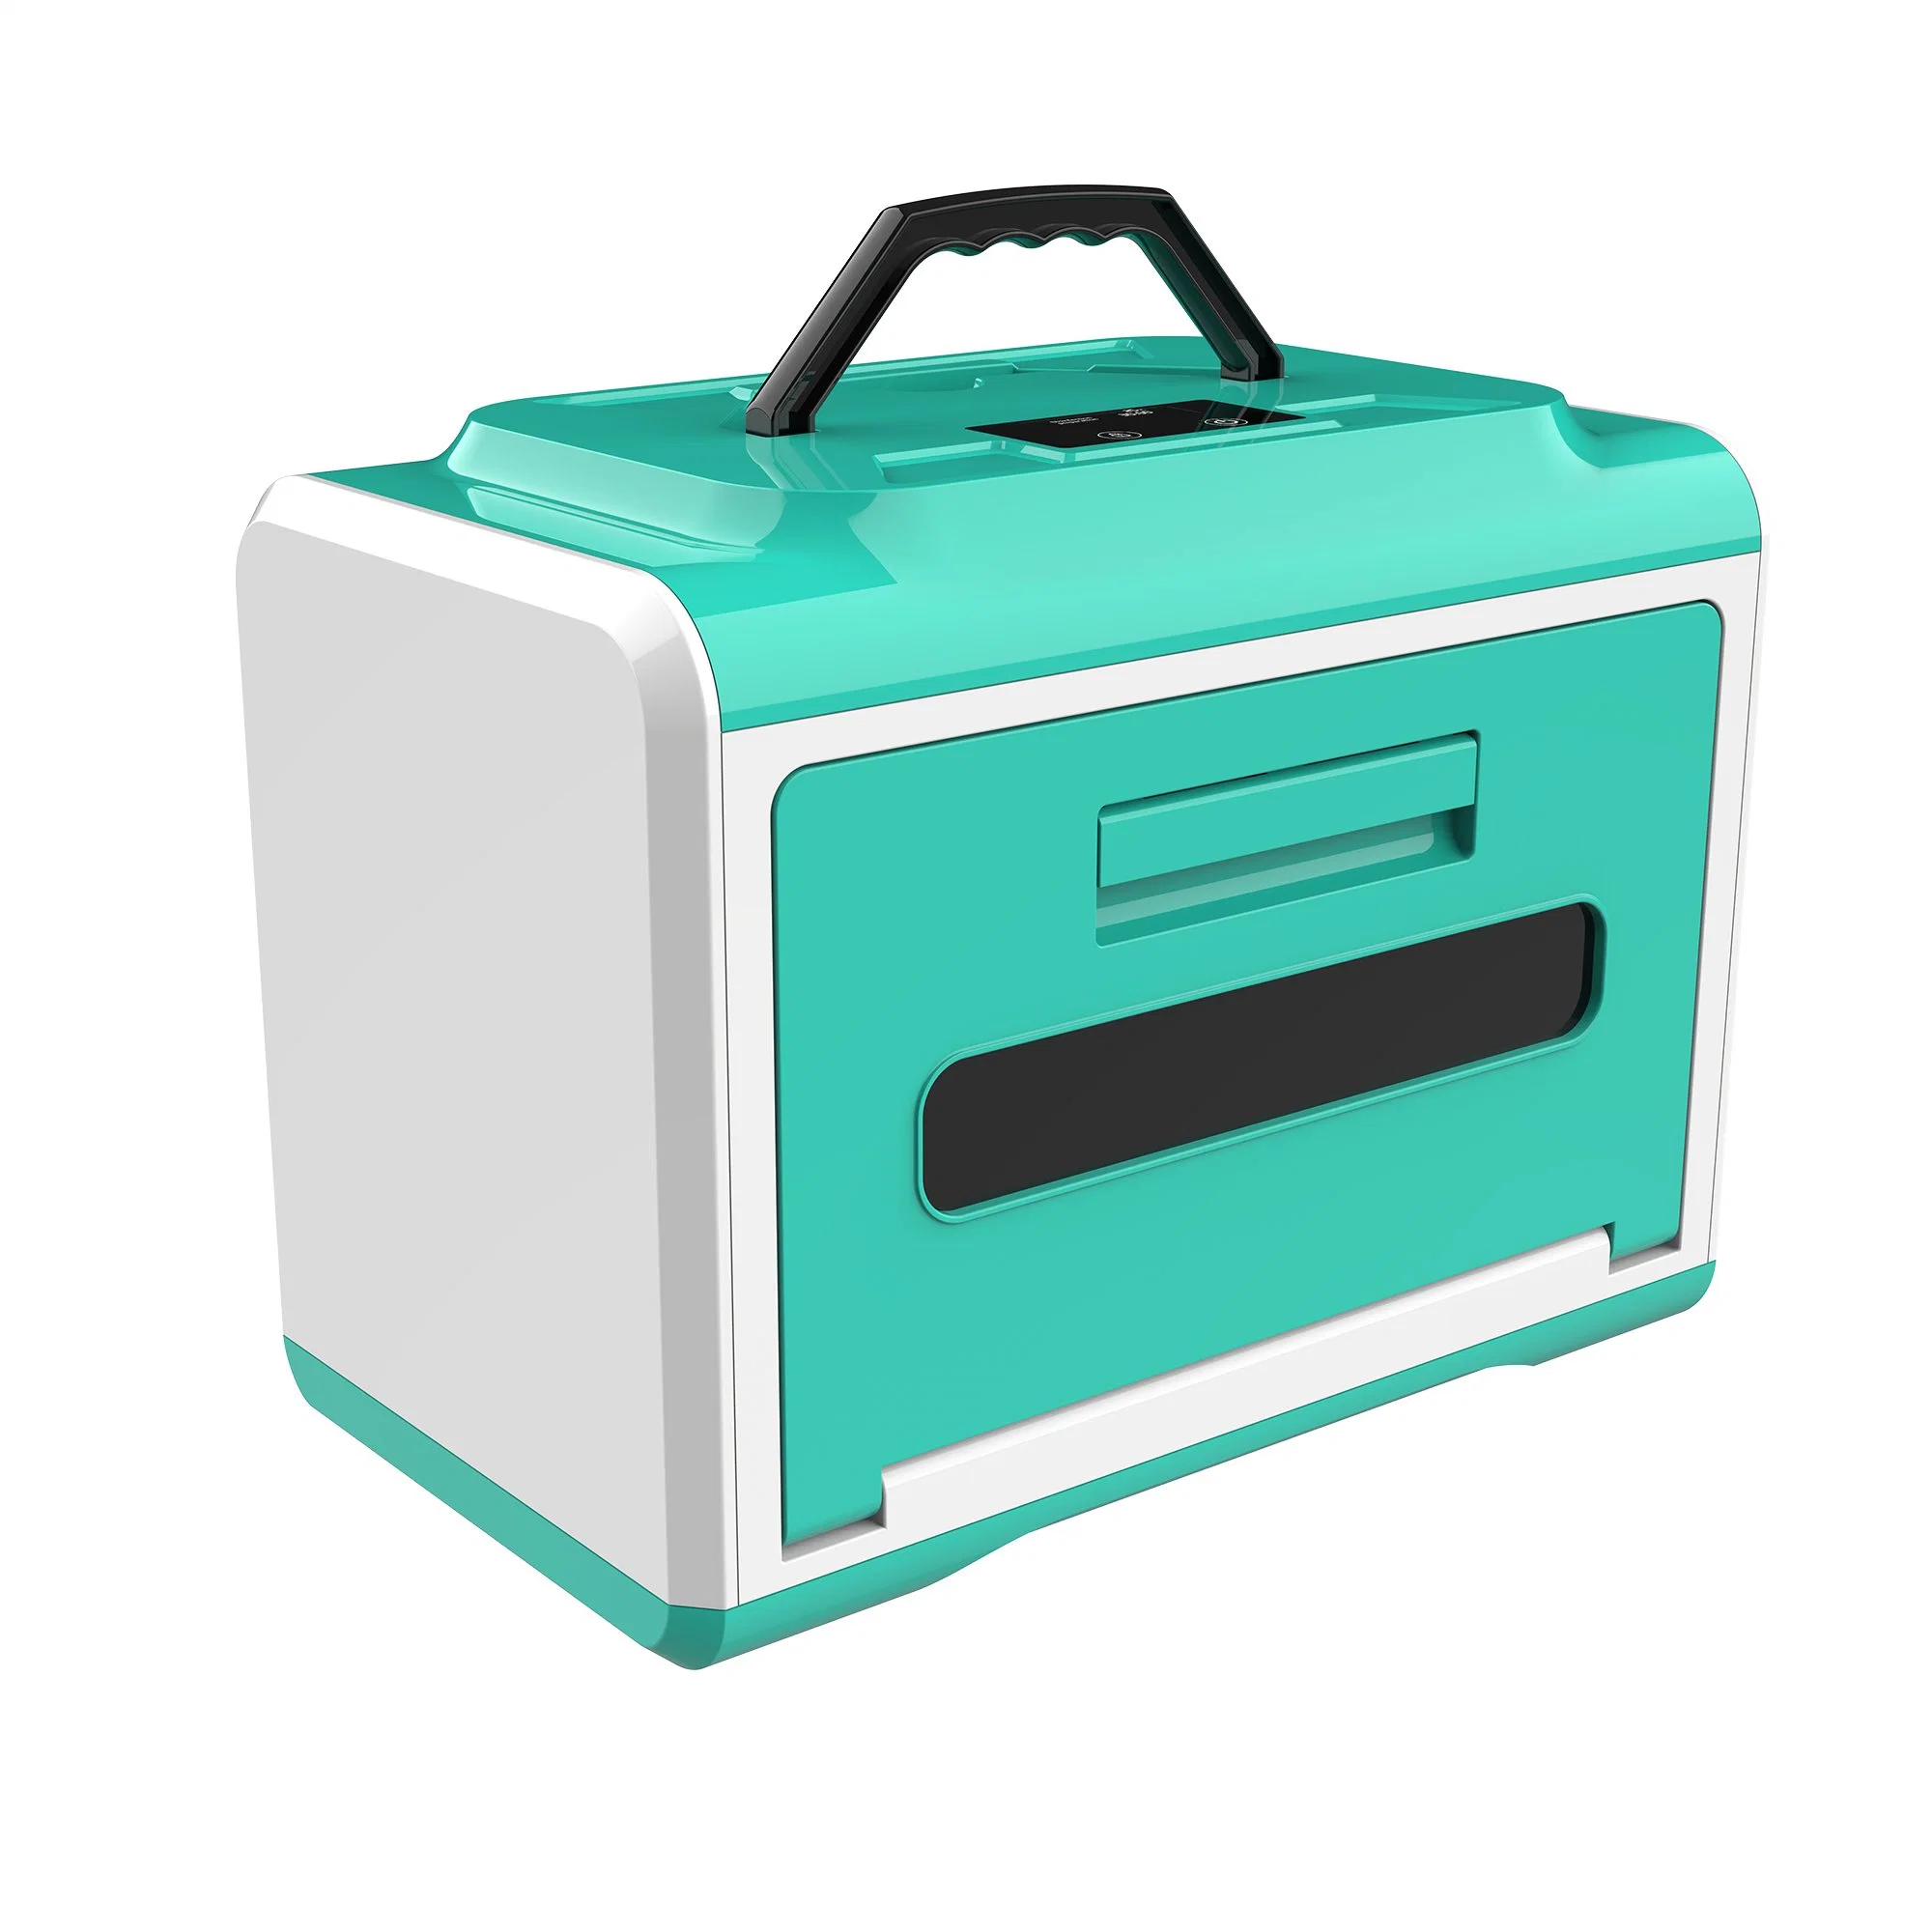 A nova caixa de esterilização médica é adequada para hospitais, escolas e casas e outros locais